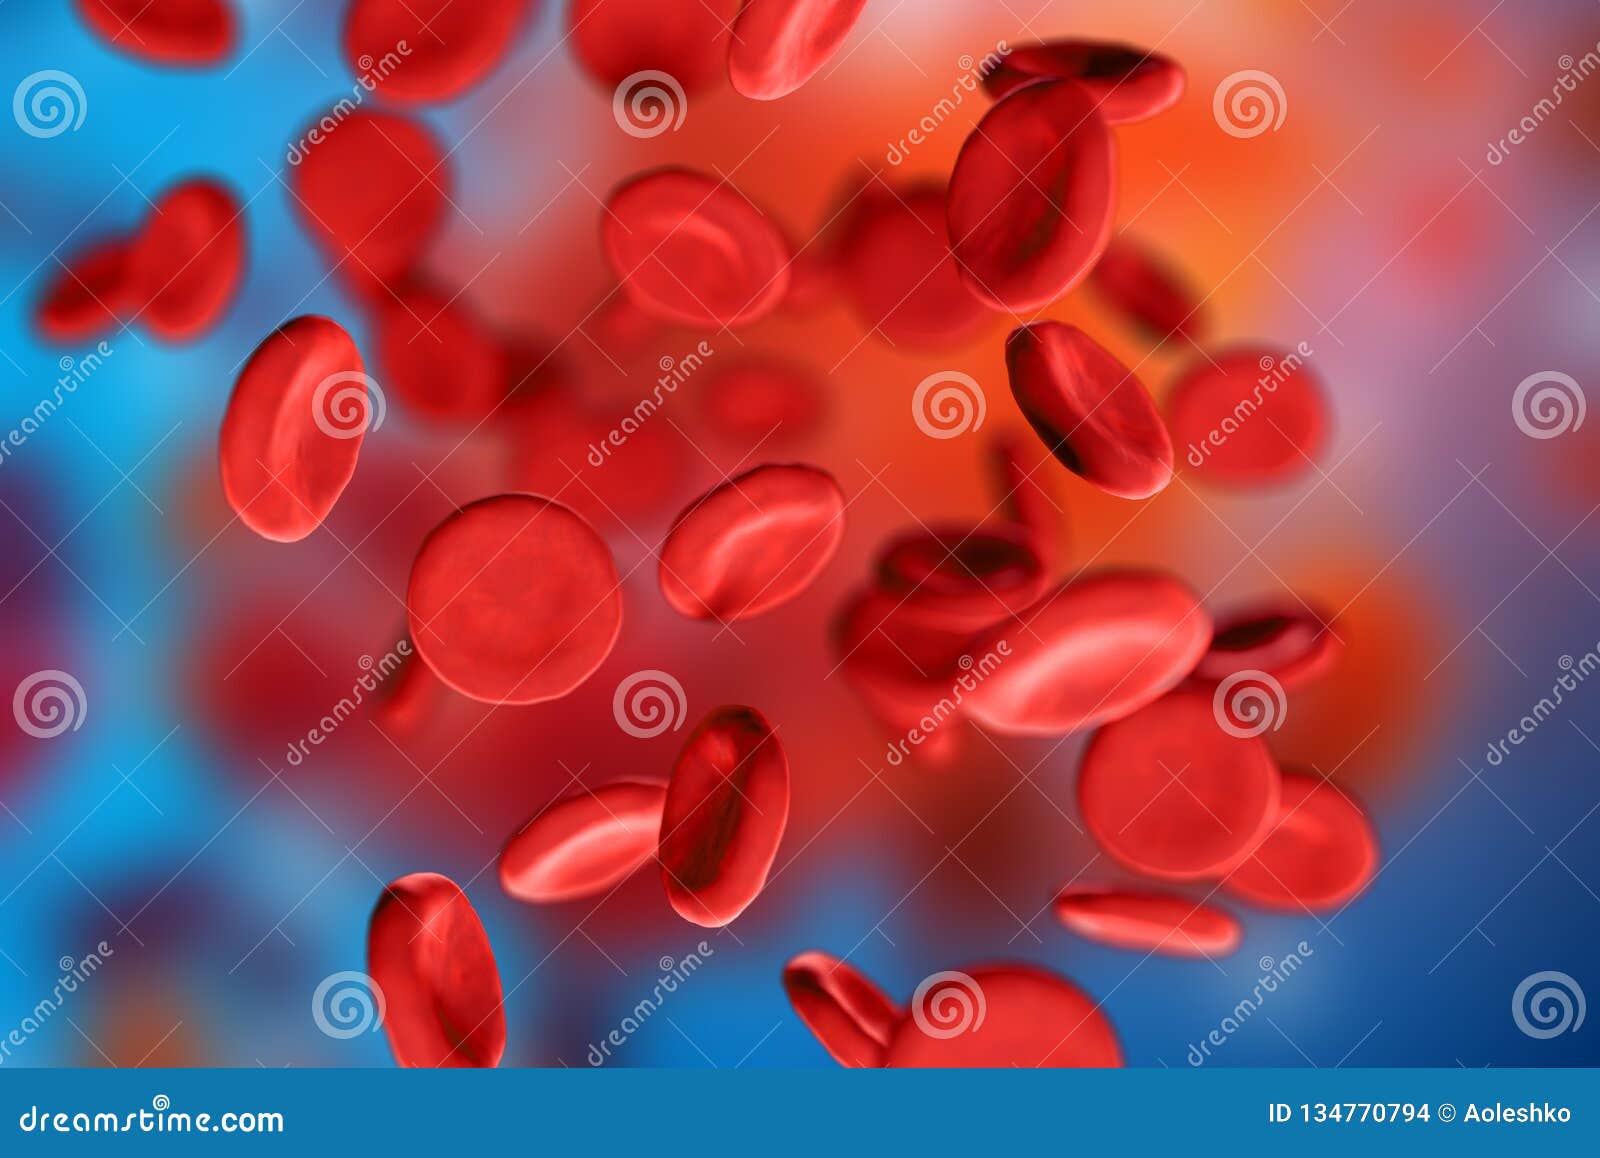 3d De Los Eritrocitos Rojos De Glóbulos Debajo De Un Microscopio En Fondo Azul Concepto Médico Científico Foto de archivo - Imagen de enfermedad, corte: